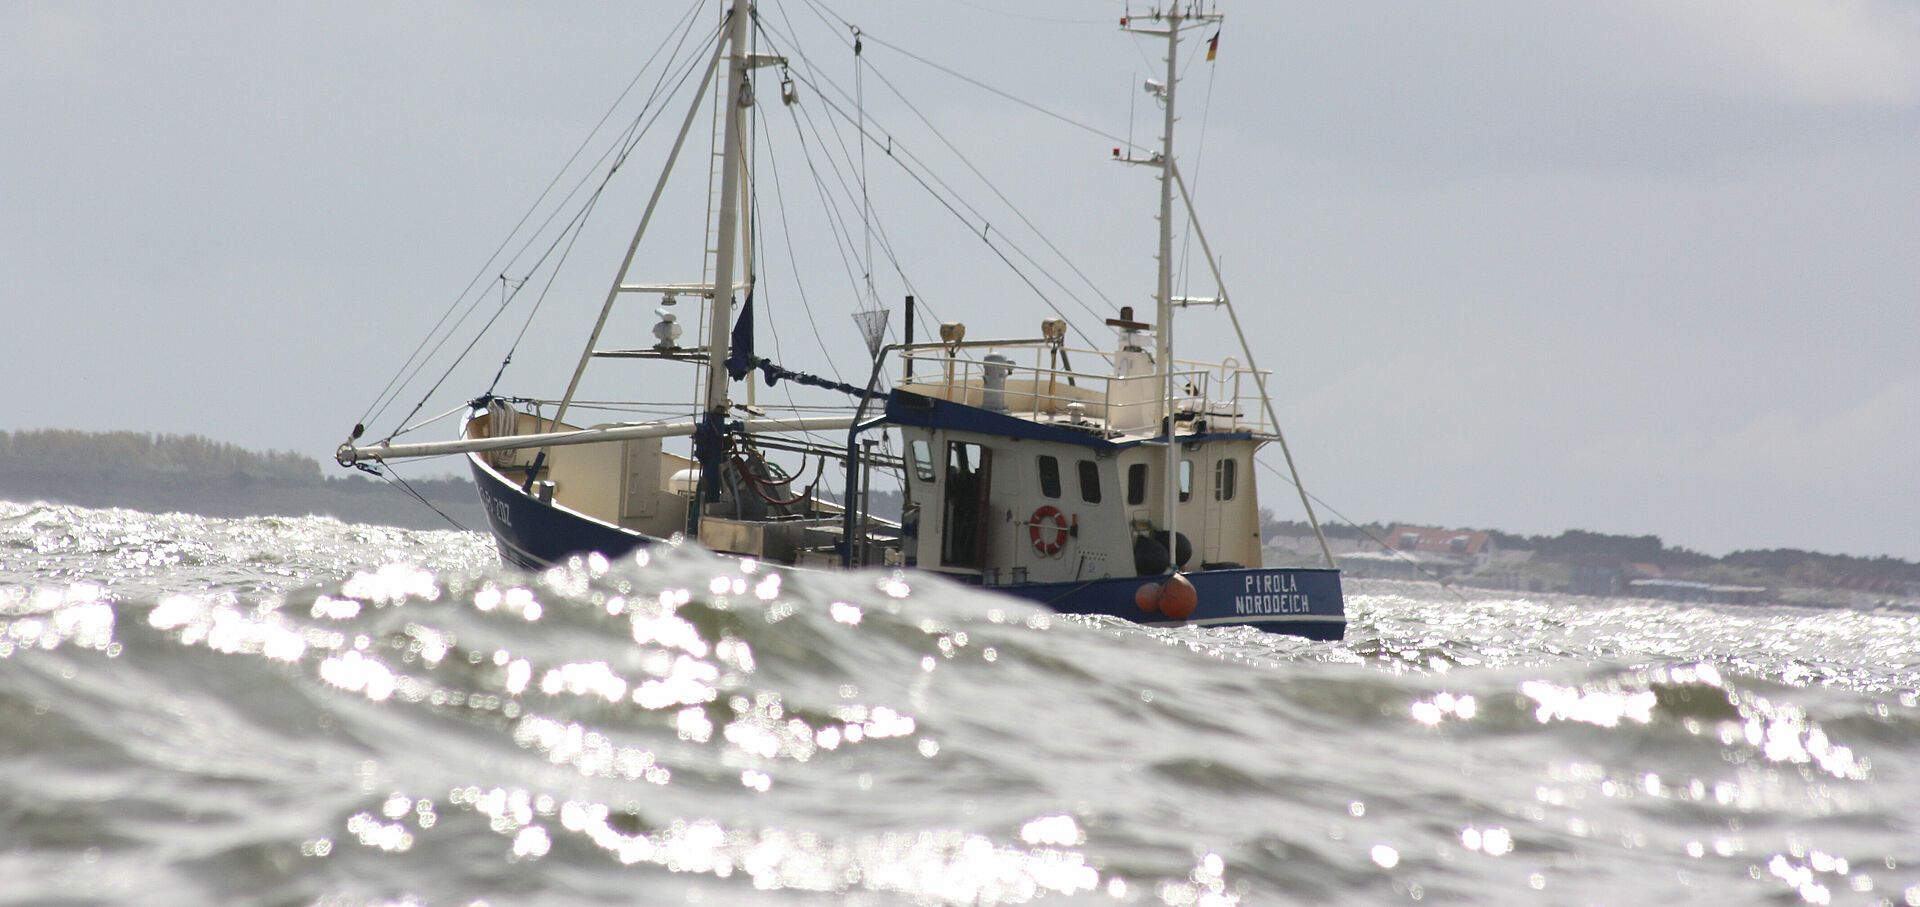 Ein blauer Fischkutter mit der Aufschrift "Piroli Norddeich" auf See.